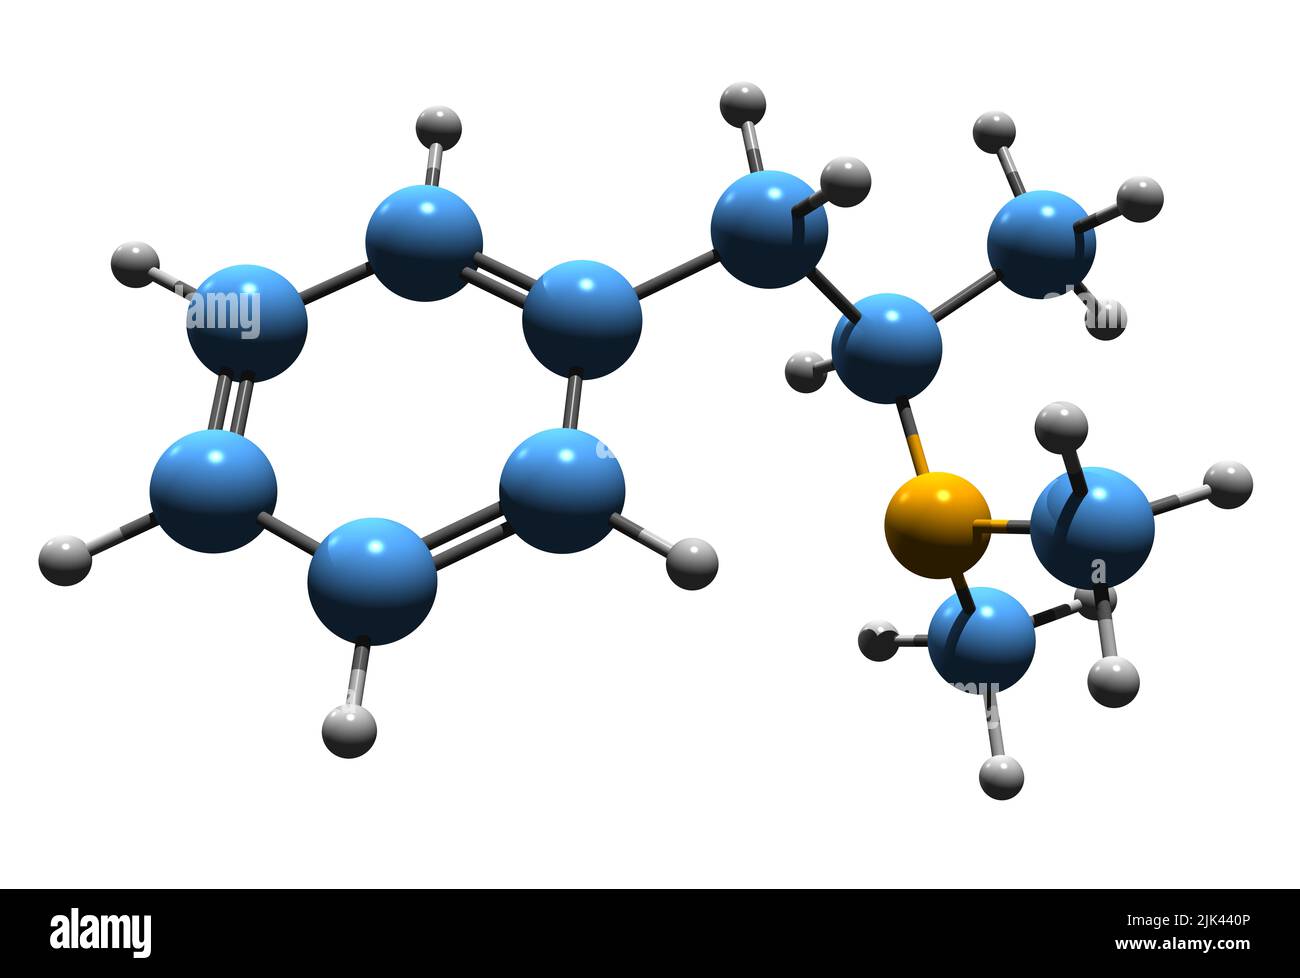 3D Aufnahme von Dimethylamphetamin Skelettformel - molekularchemische Struktur von Dimetamfetamin isoliert auf weißem Hintergrund Stockfoto